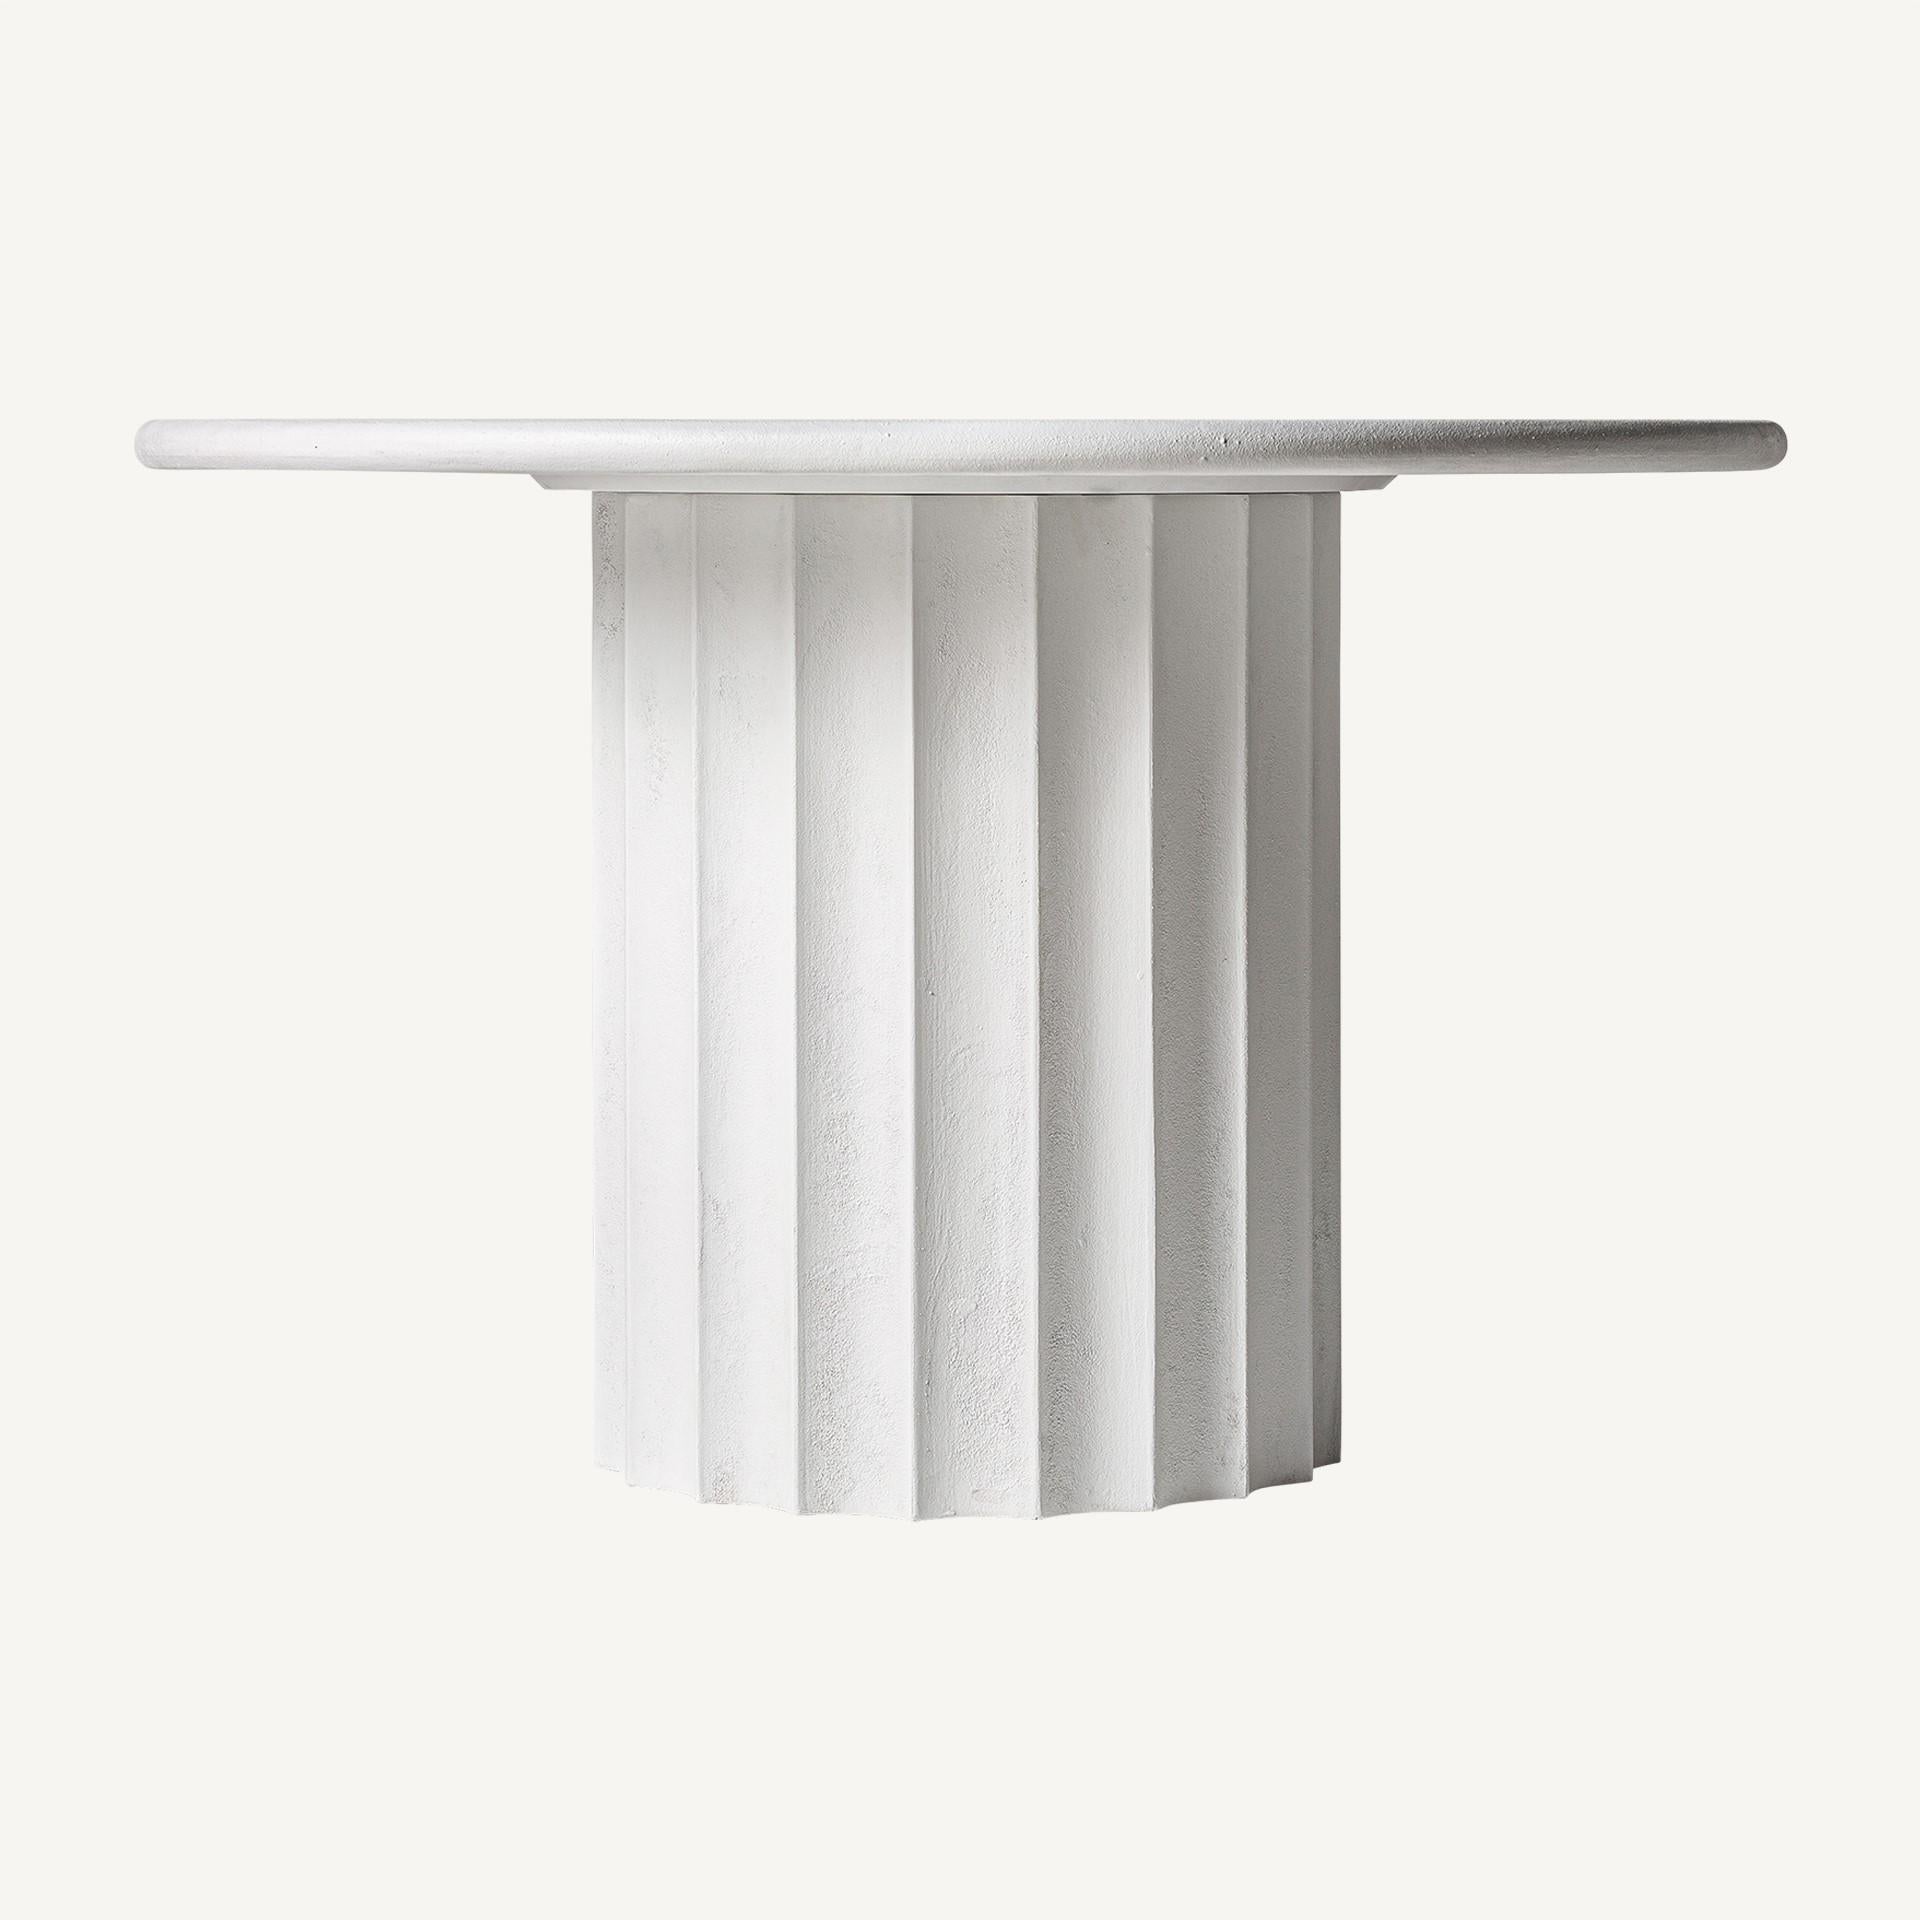 Contemporary Italian 1970s Design Style White Concrete Pedestal Table For Sale